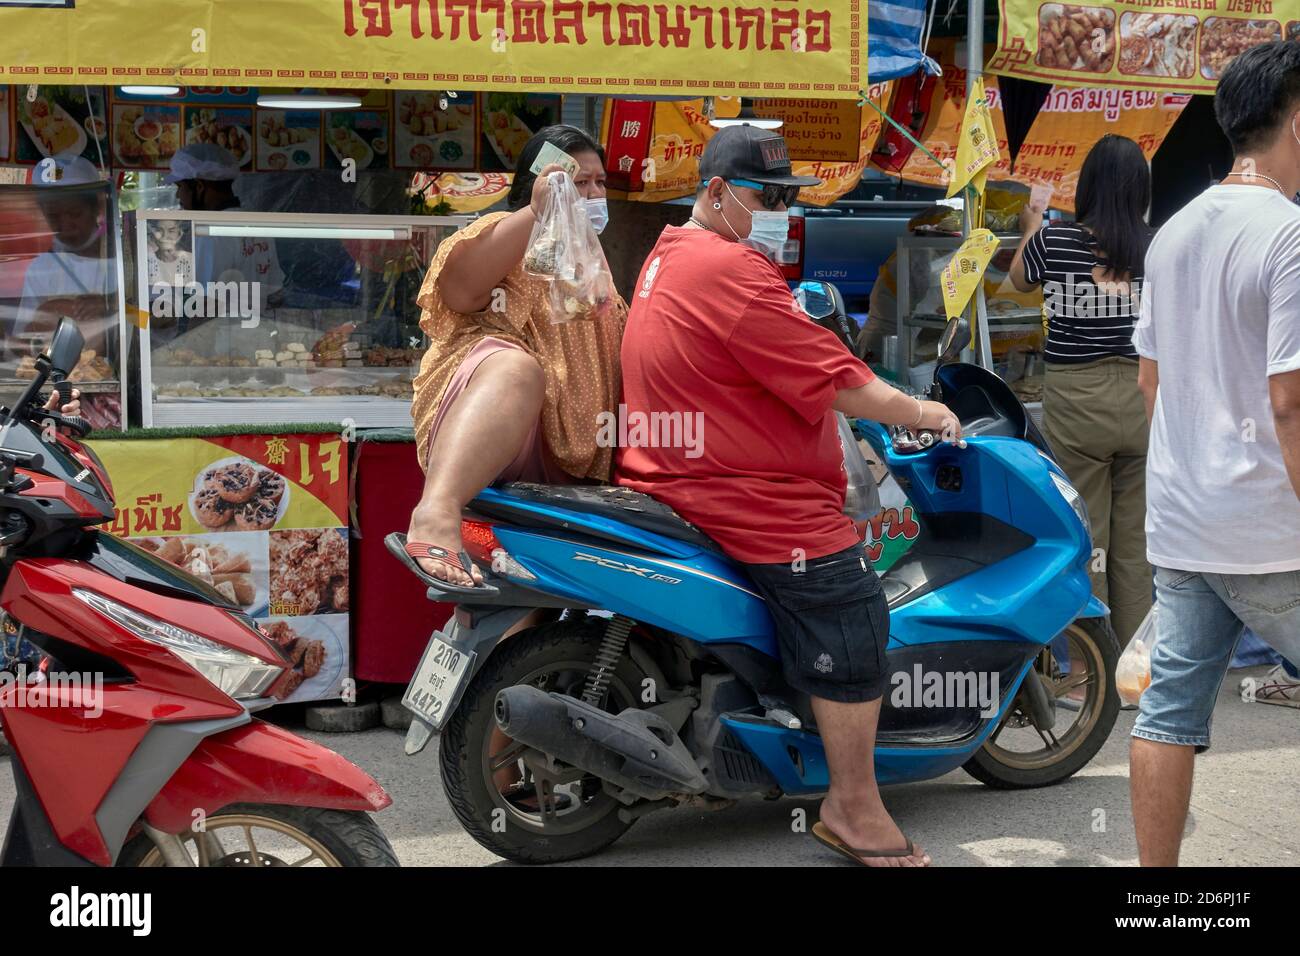 Un couple obèse faisant une moto sur un marché alimentaire de rue ayant collecté de la nourriture dans une cabine. Thaïlande Banque D'Images